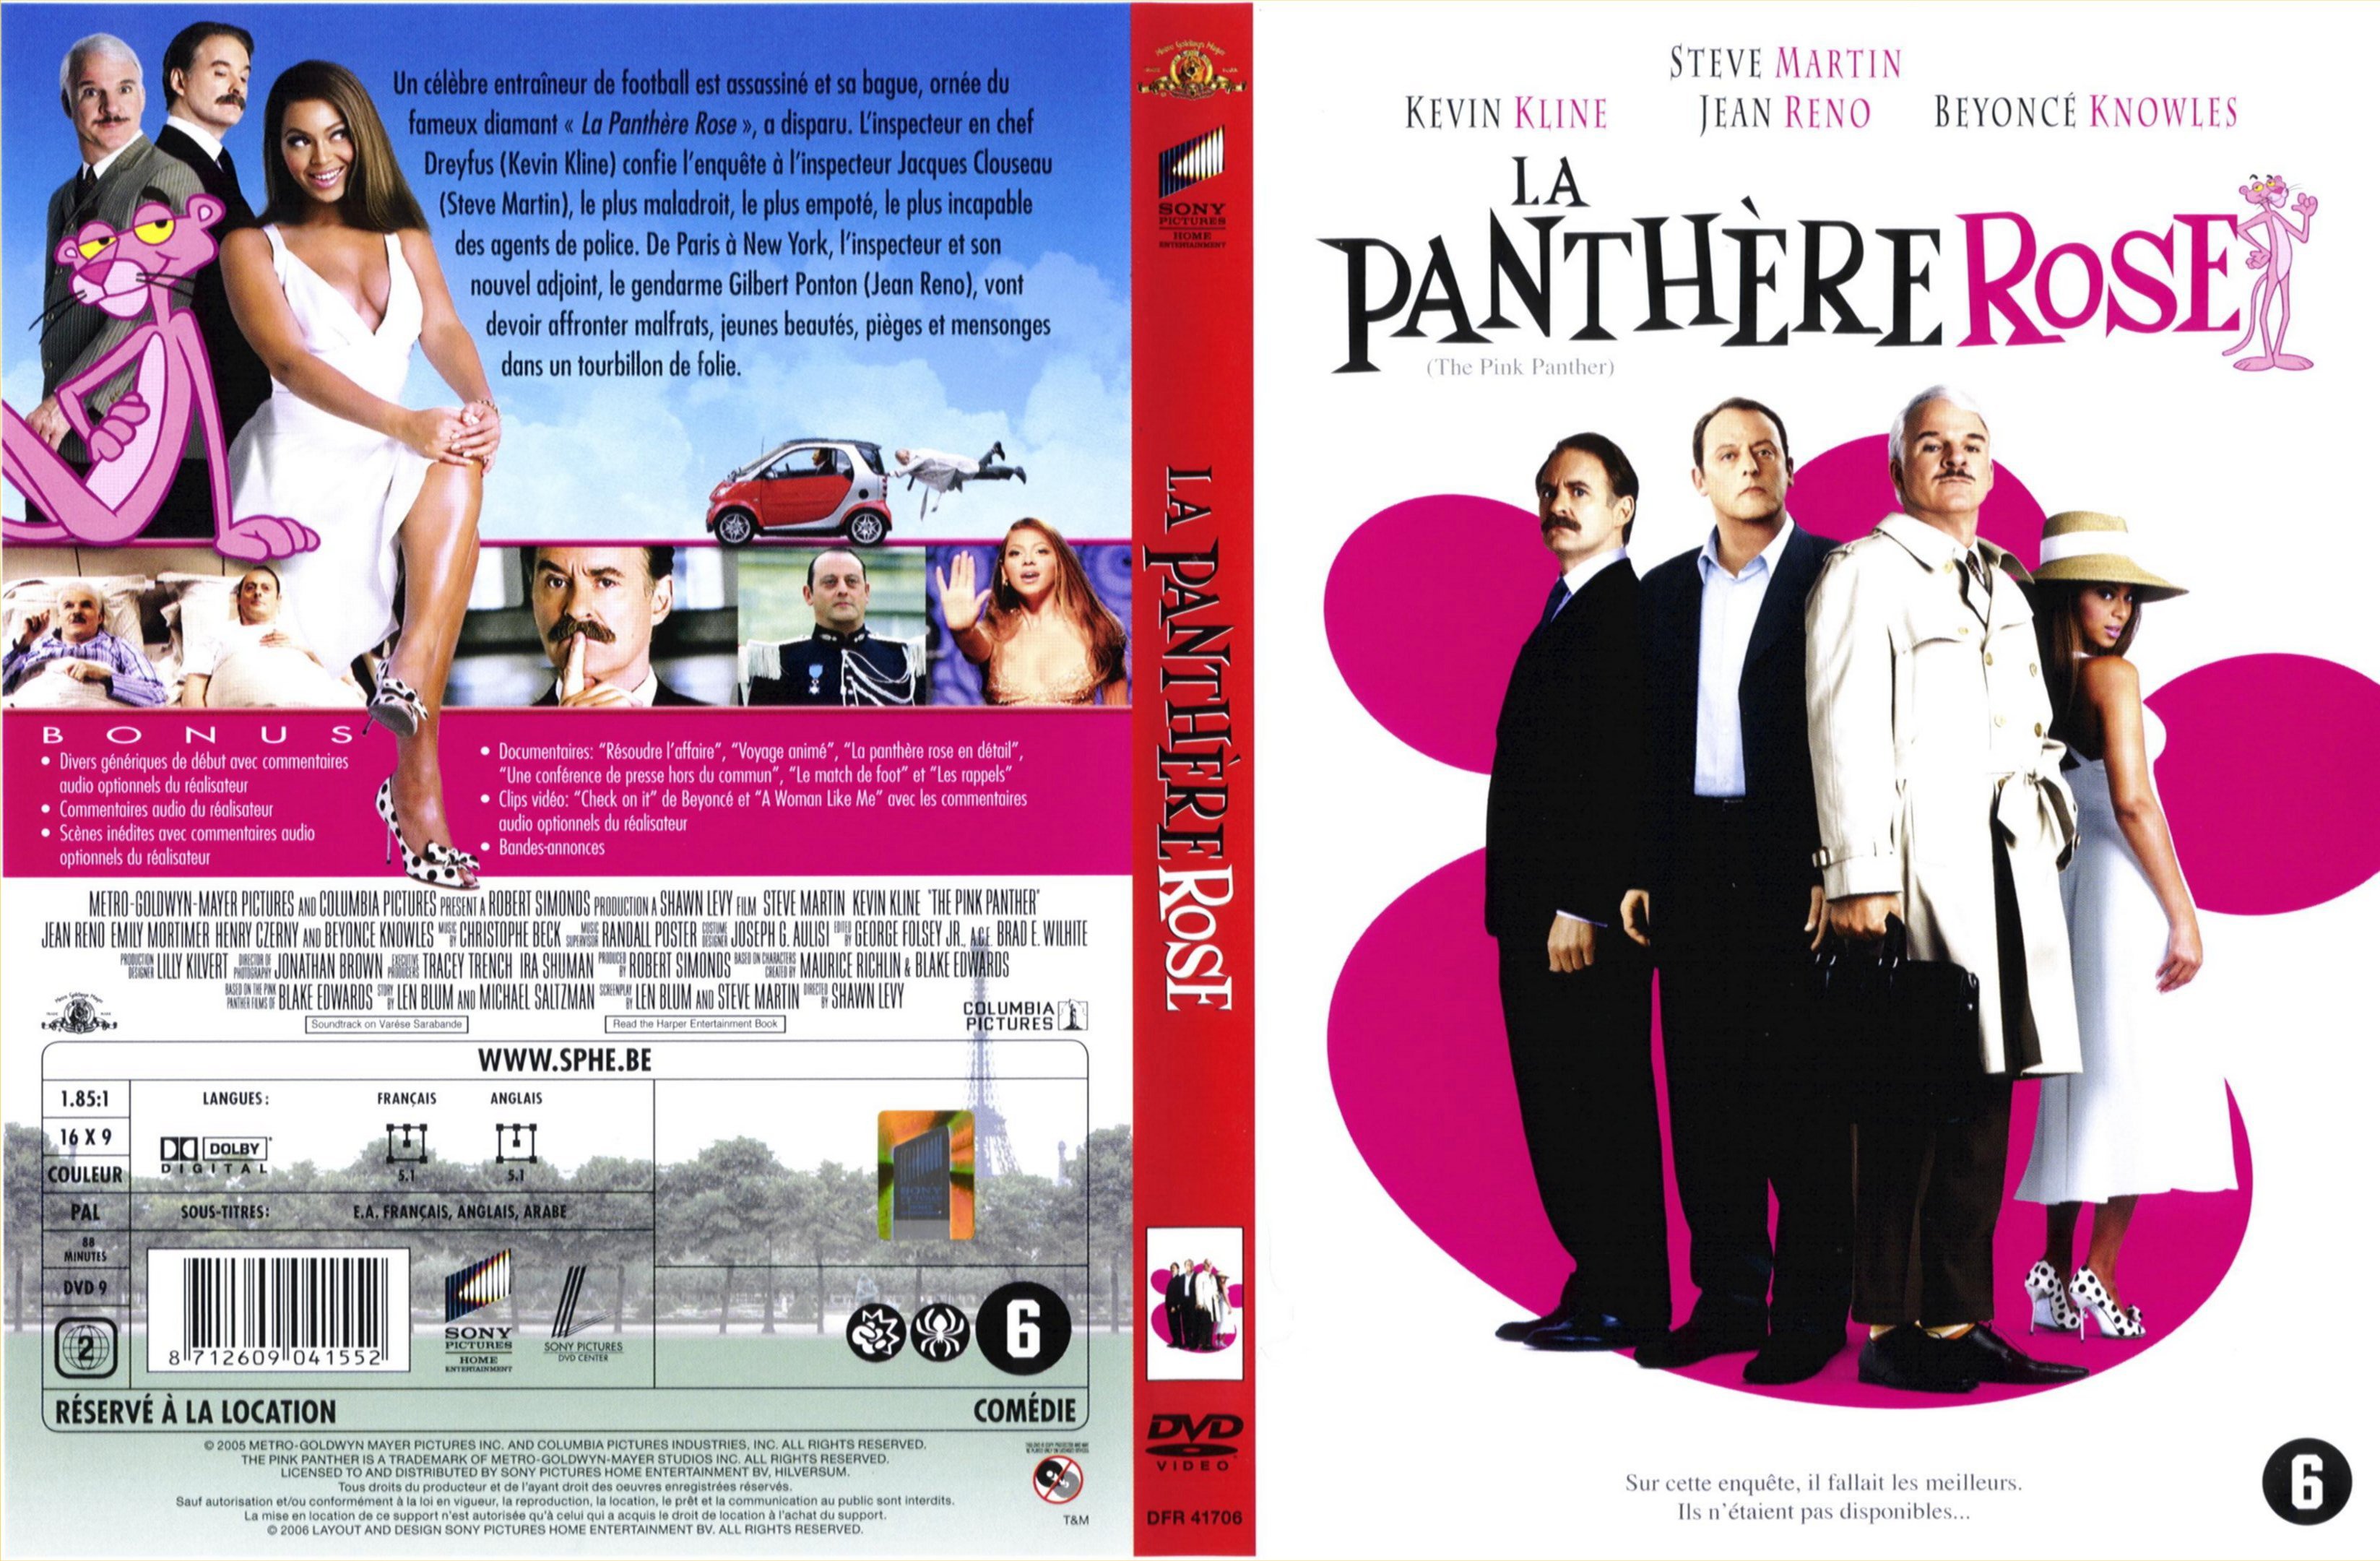 Jaquette DVD La panthre rose (2006) v2